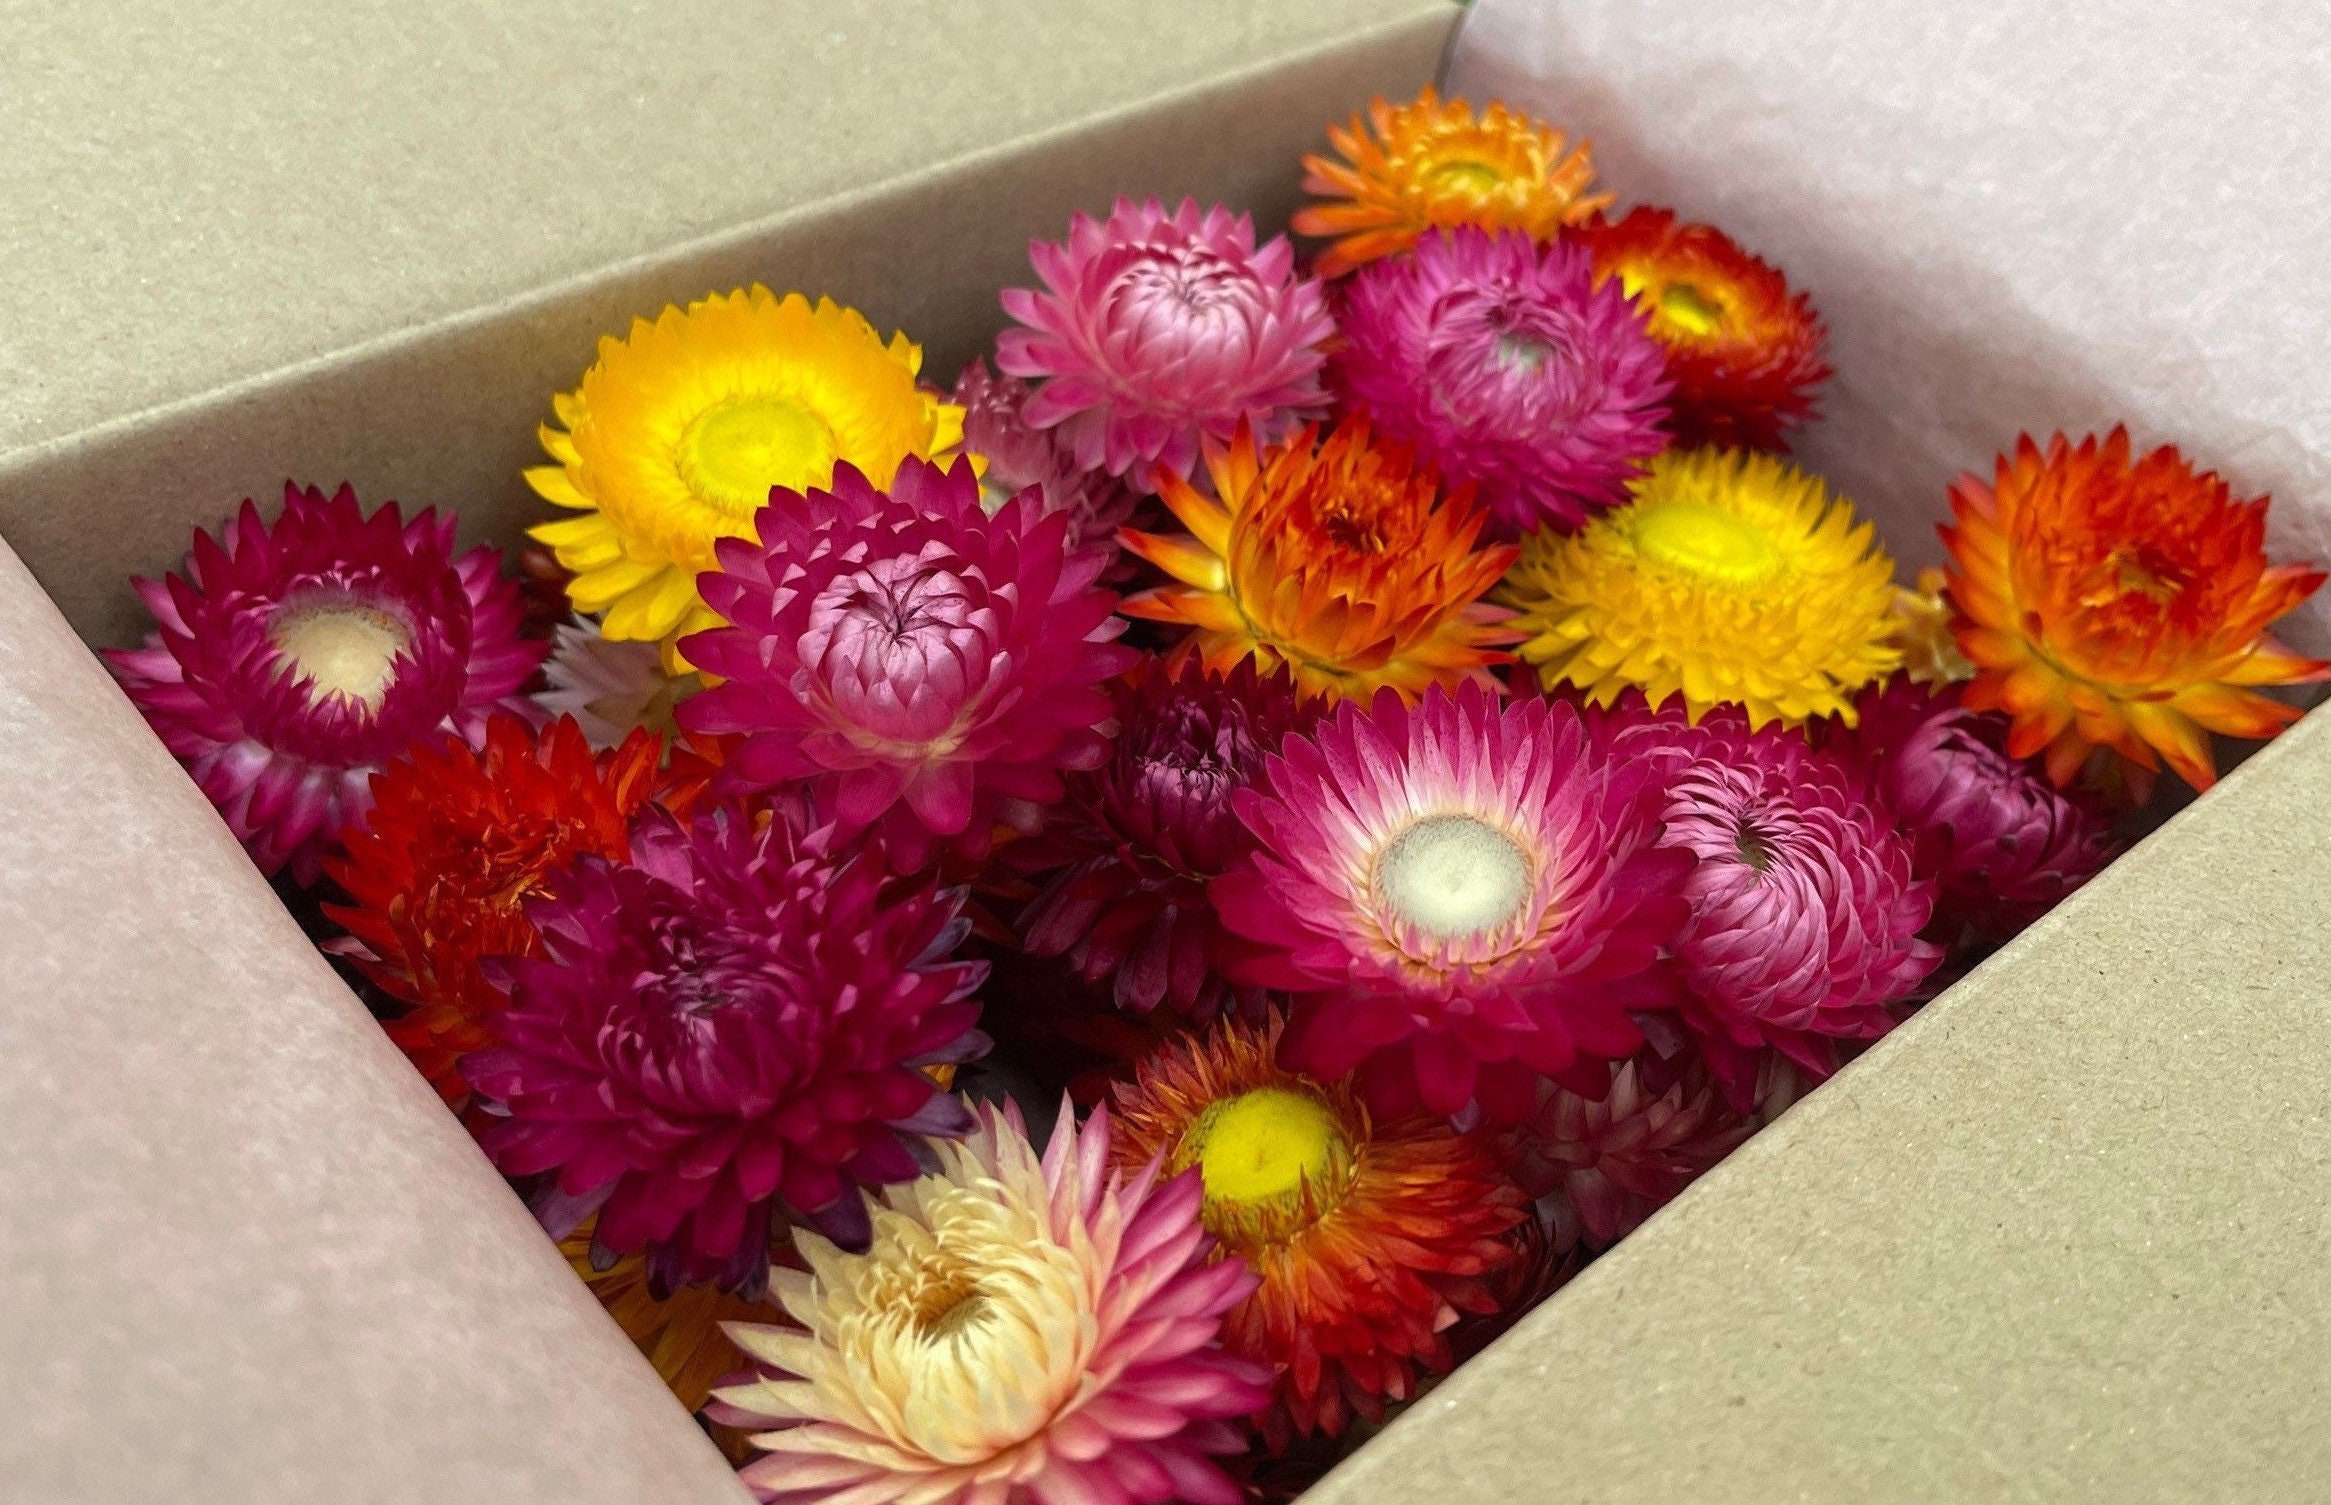 Strawflowers (Helichrysum) - Dark Pink - Dried Flowers - DIY – Dried  Flowers Forever